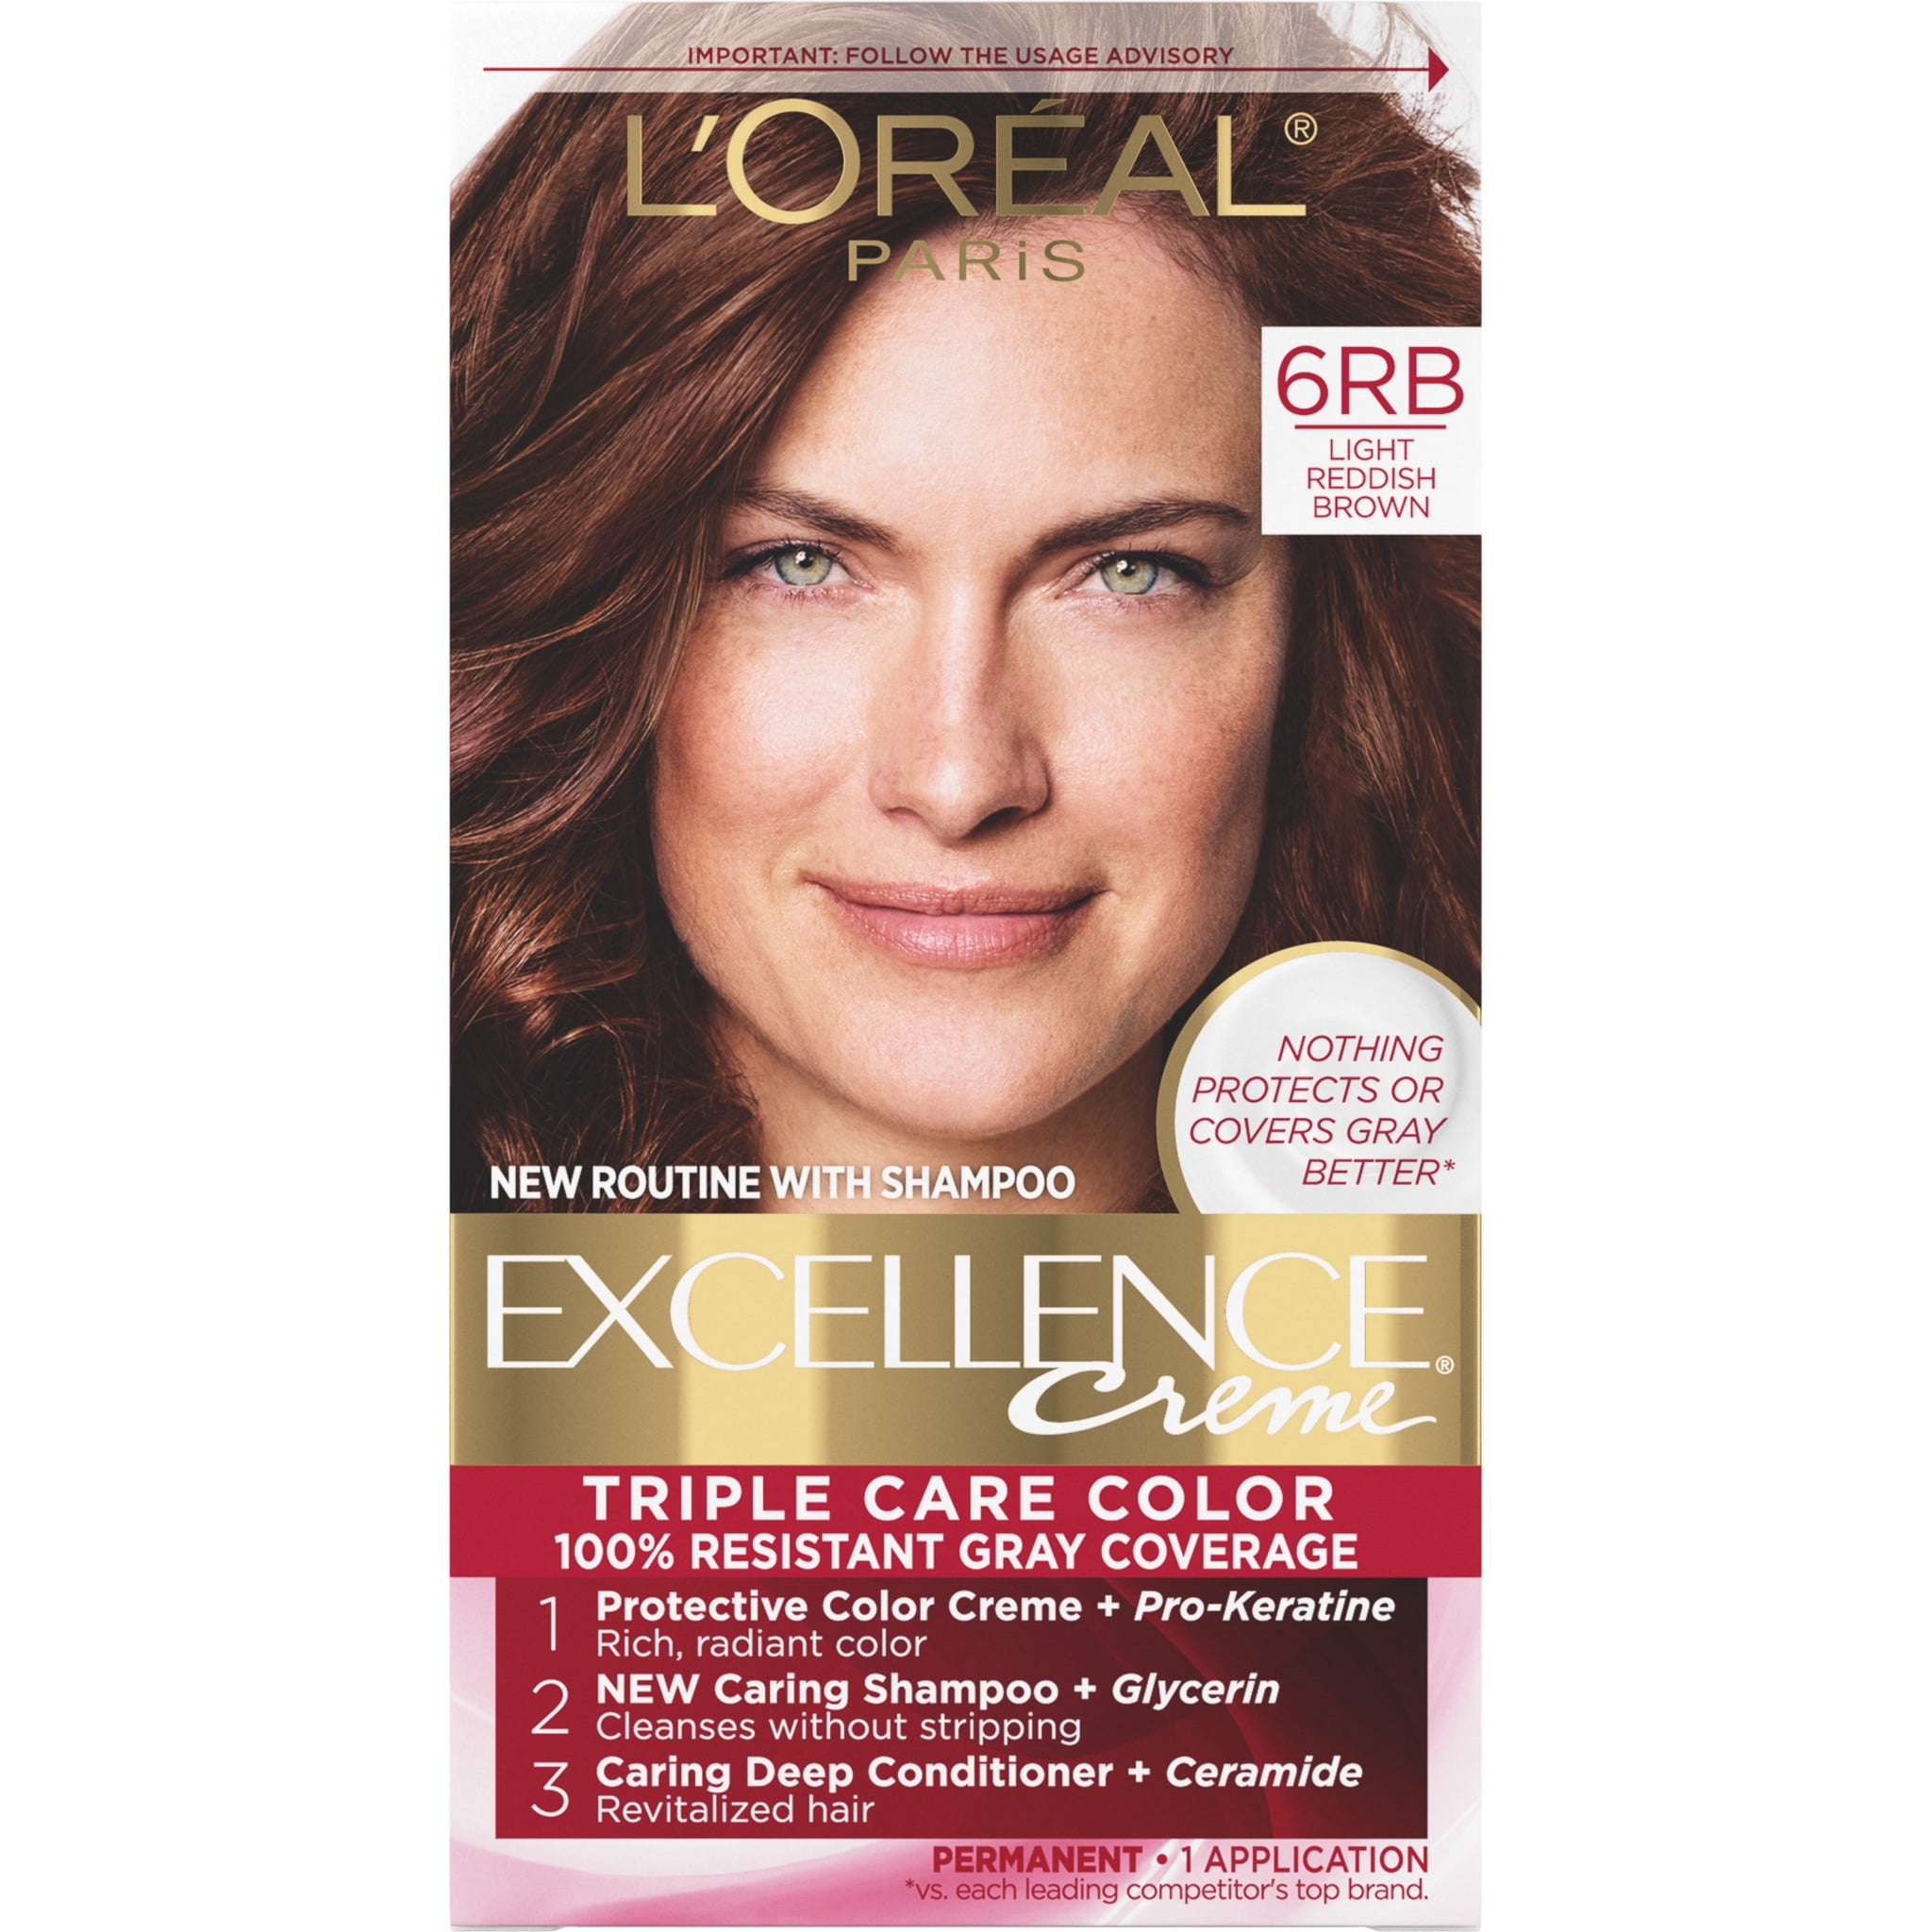 L'Oreal Paris Excellence Creme 6RB Light Reddish Brown Level 3 Permanent  Hair Color, 1 Application - Walmart.com